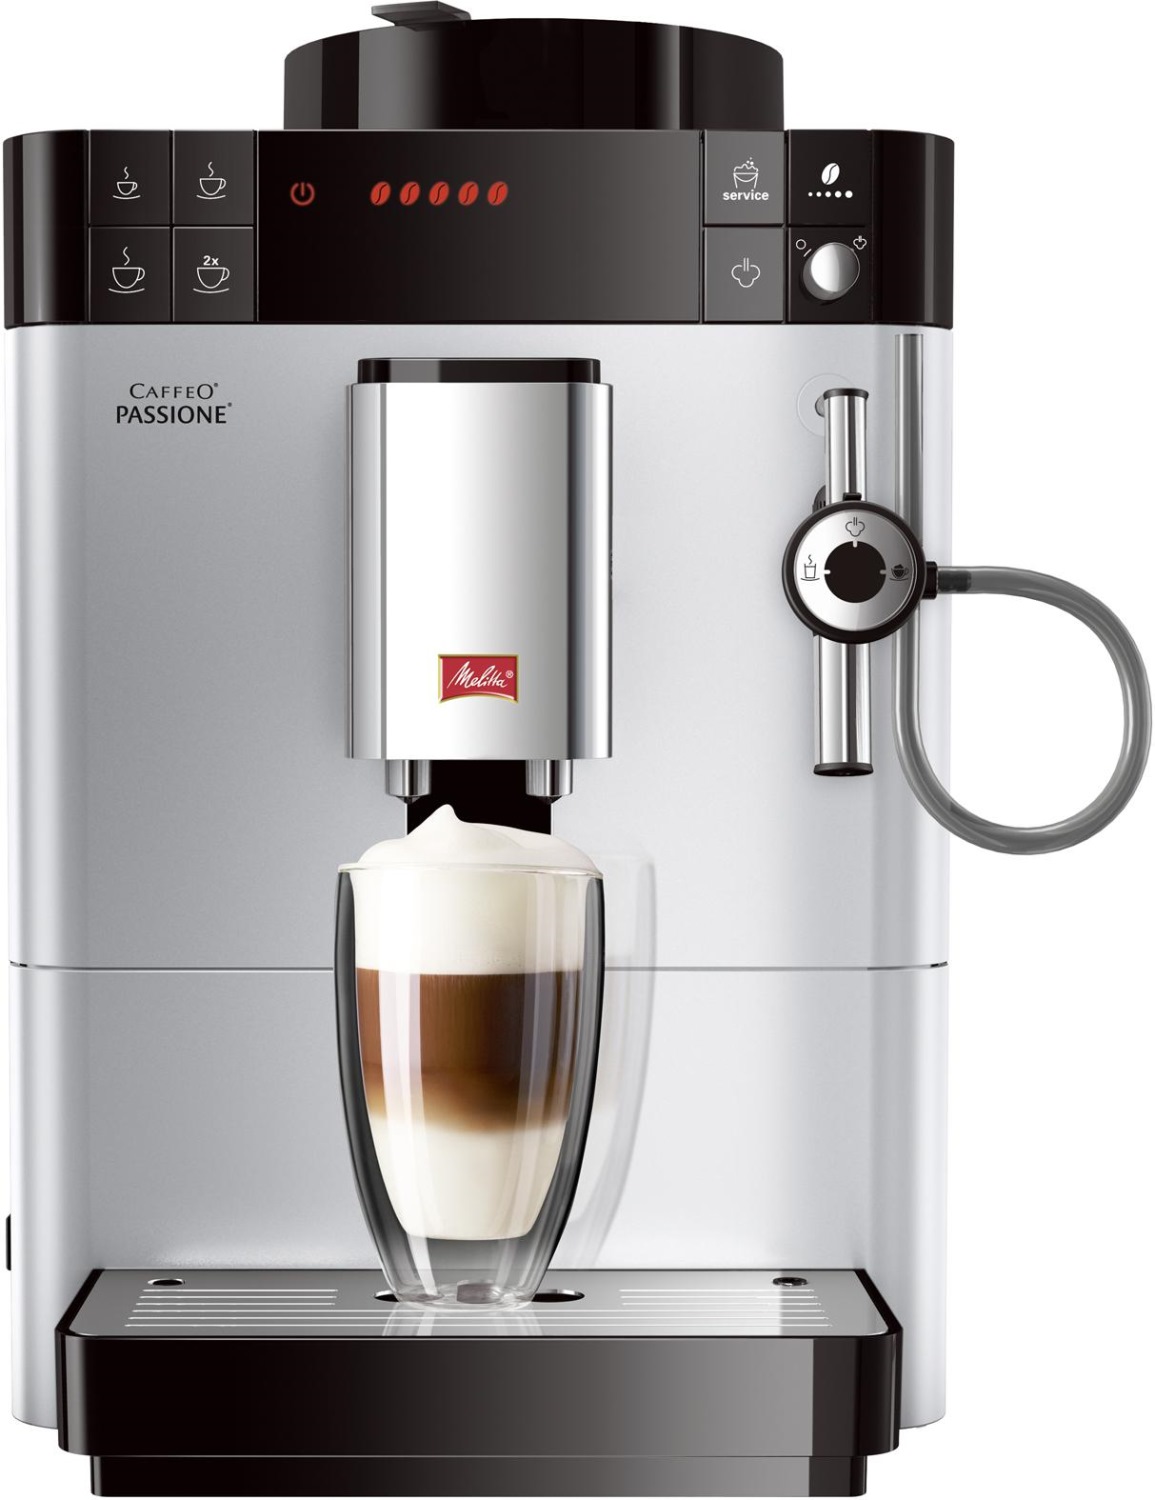 Coffee machine Melitta E957-101 Solo Perfect Milk